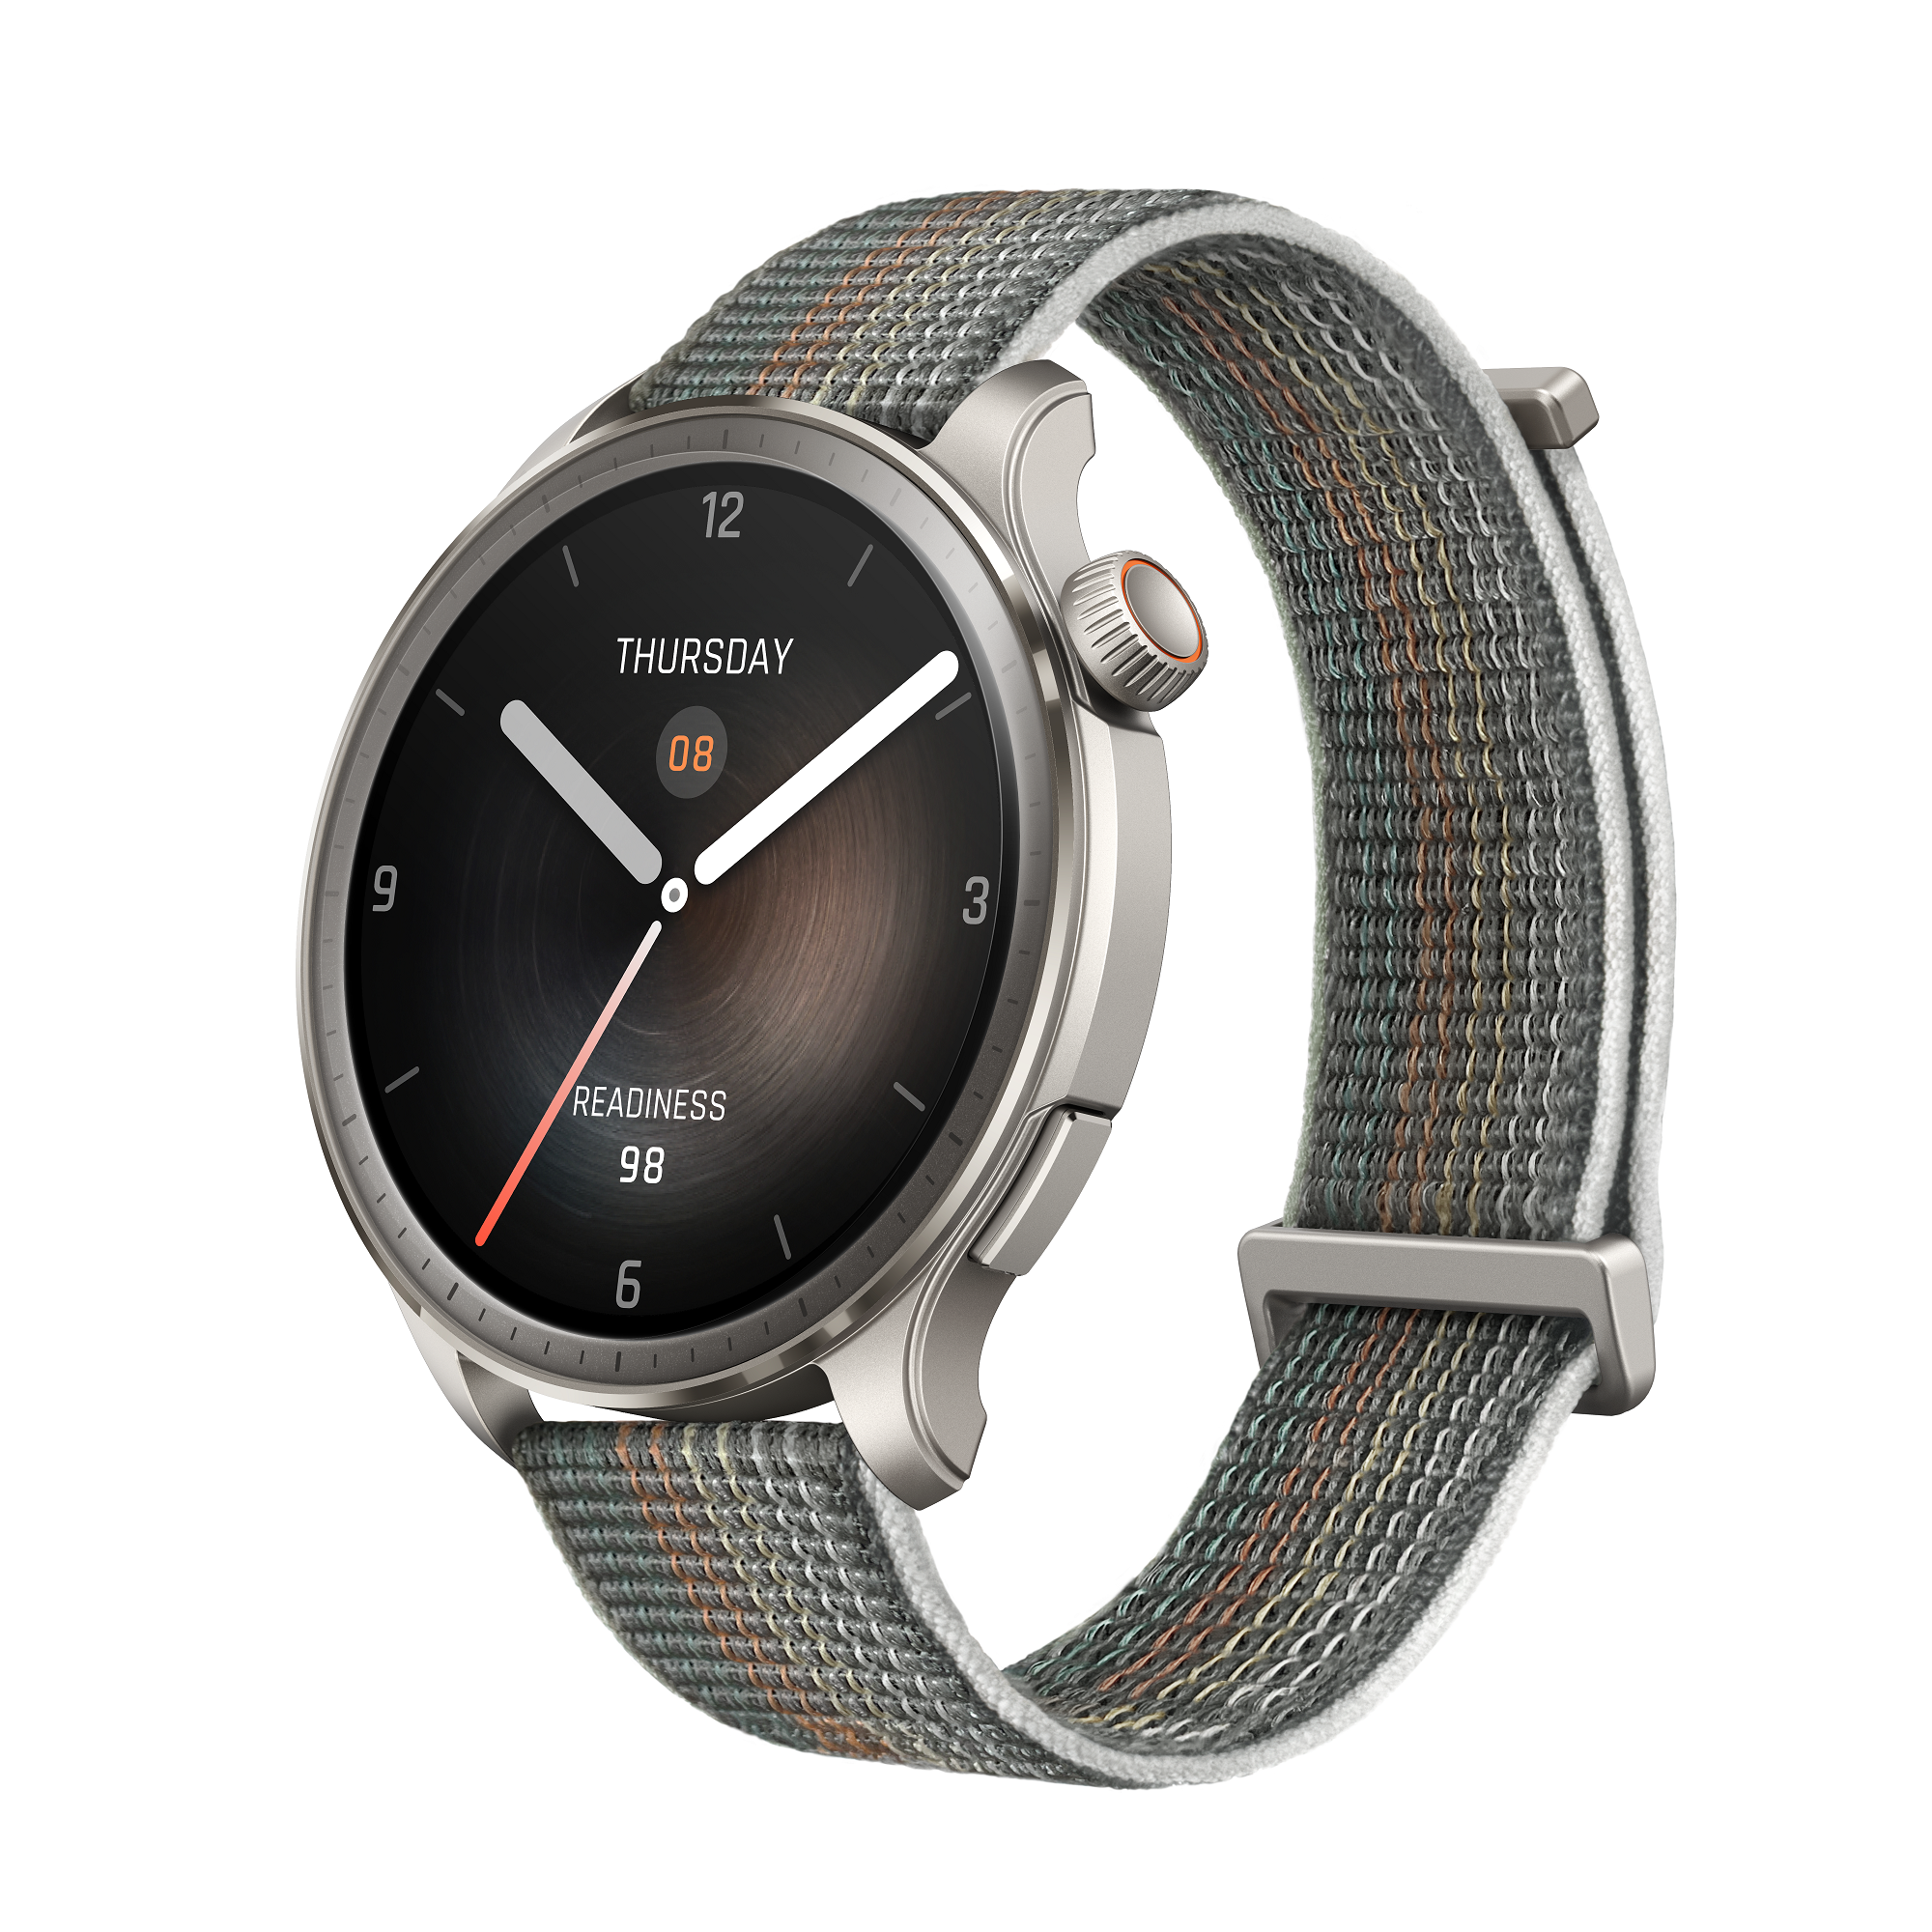 Смарт-часы Amazfit A2287 Balance серый, купить в Москве, цены в интернет-магазинах на Мегамаркет